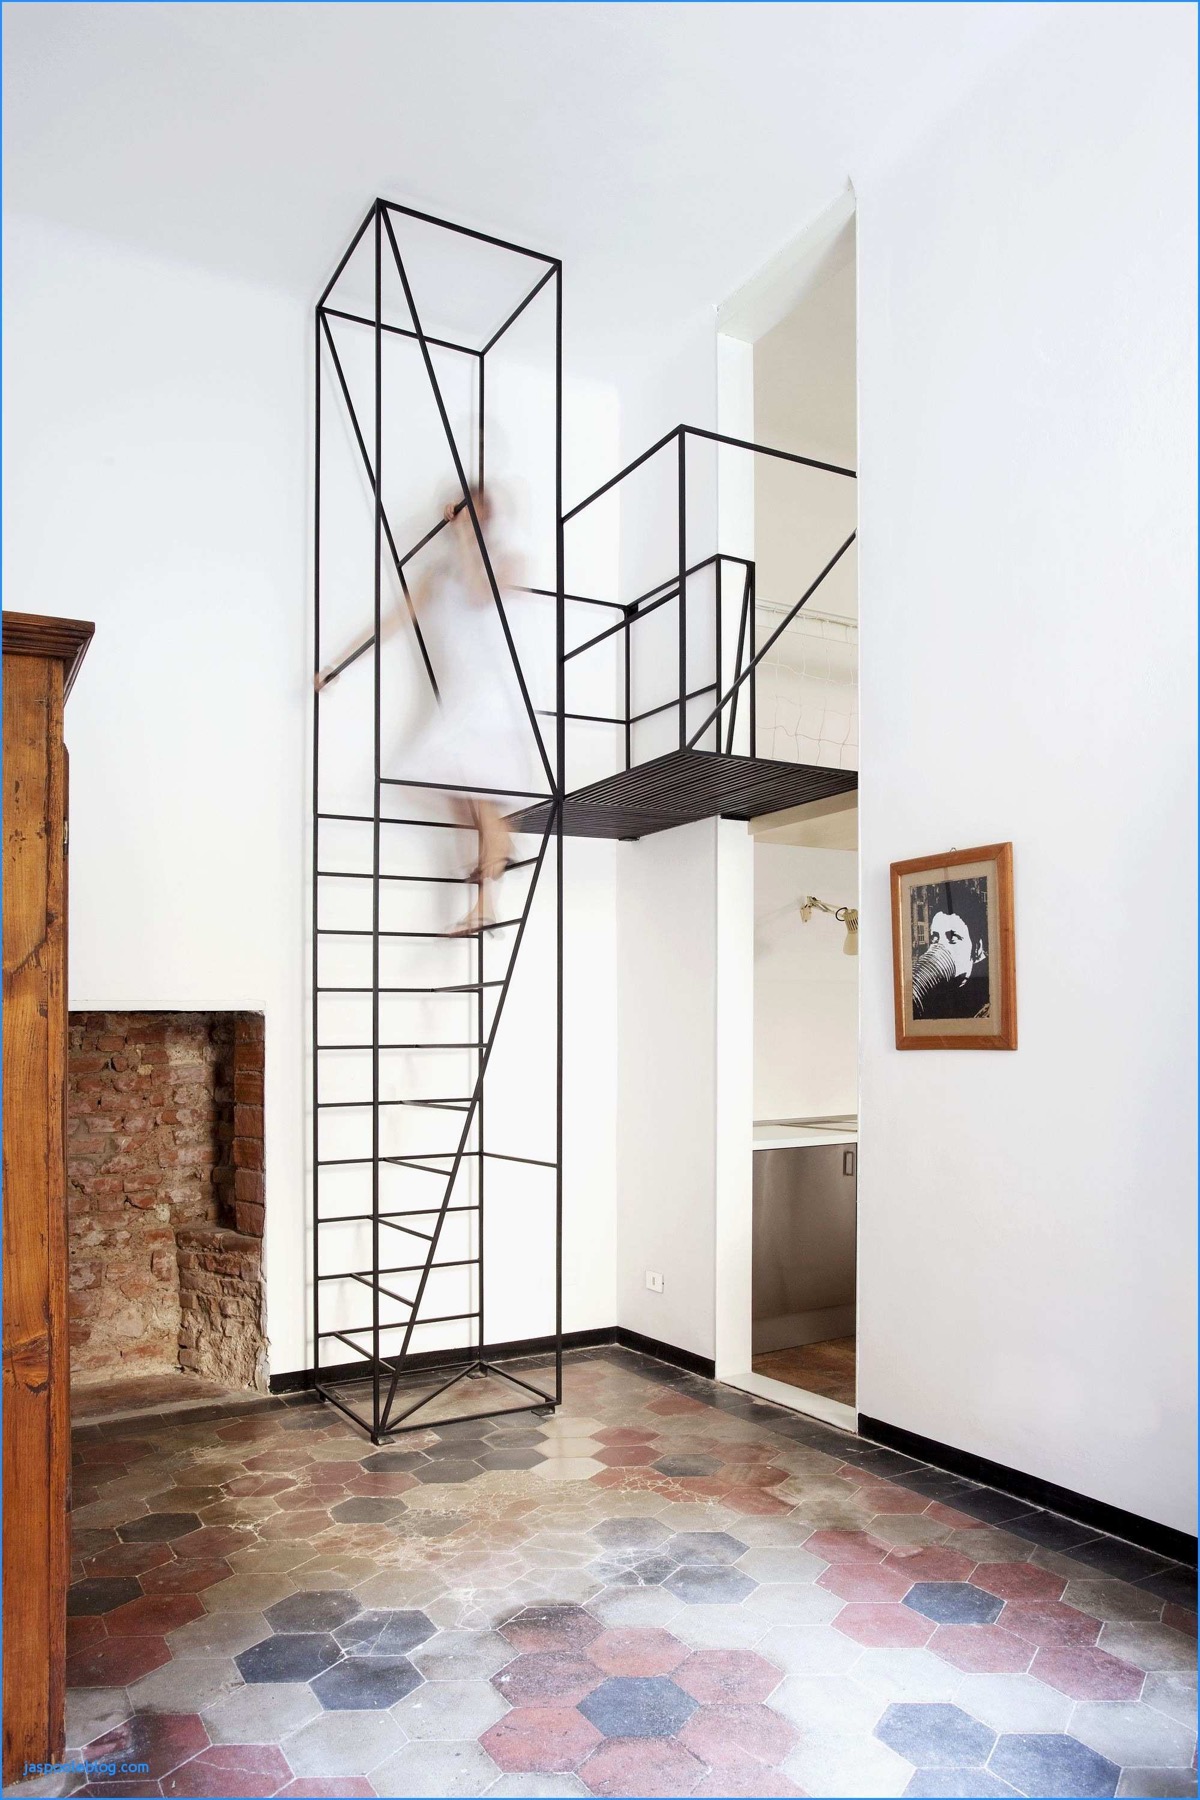 Ý tưởng thiết kế cầu thang cho nhà hiện đại